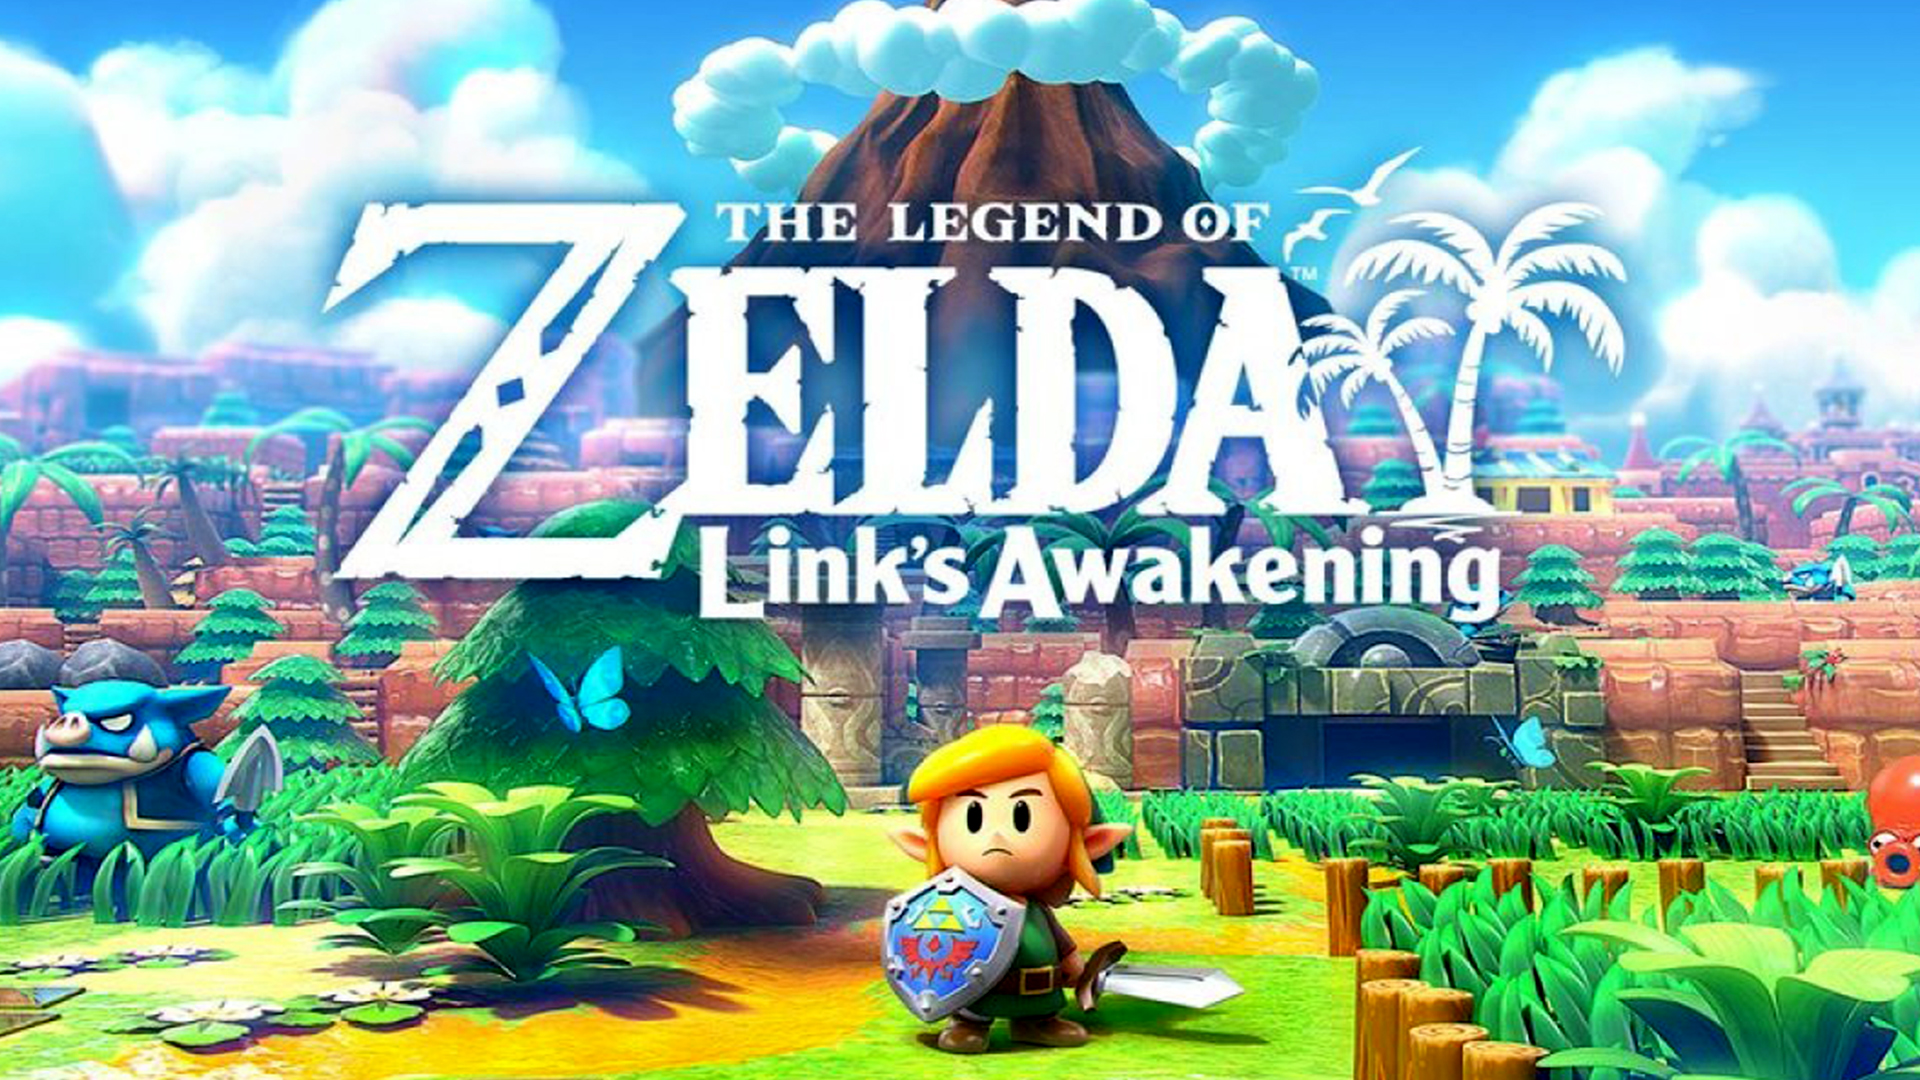 The Legend of Zelda: Link's Awakening Wallpapers